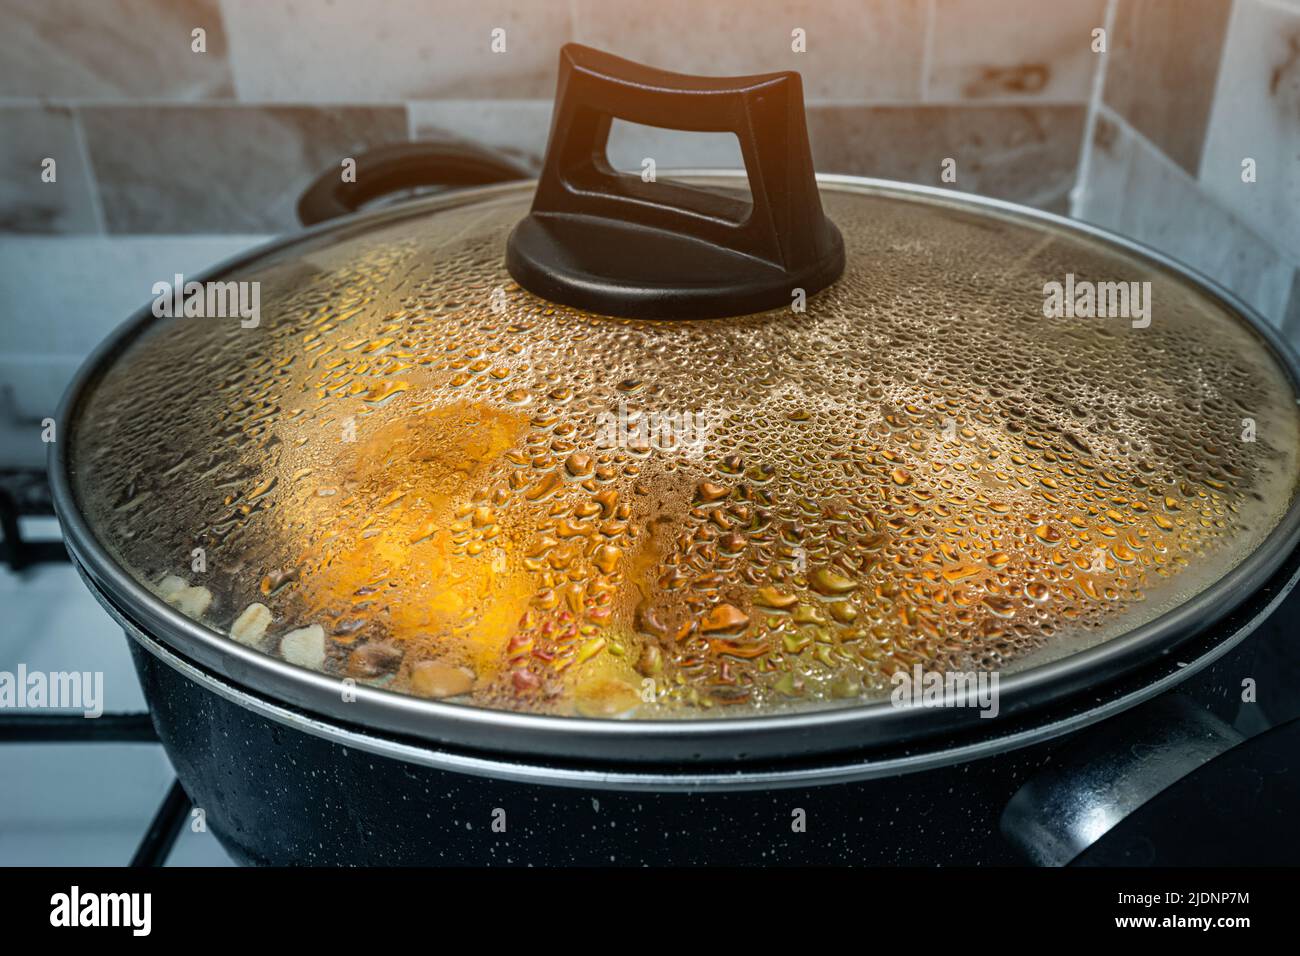 Gouttes de condensats sur le couvercle de la poêle dans laquelle le ragoût est cuit. Le concept de nouvelles recettes pour les plats faits maison Banque D'Images